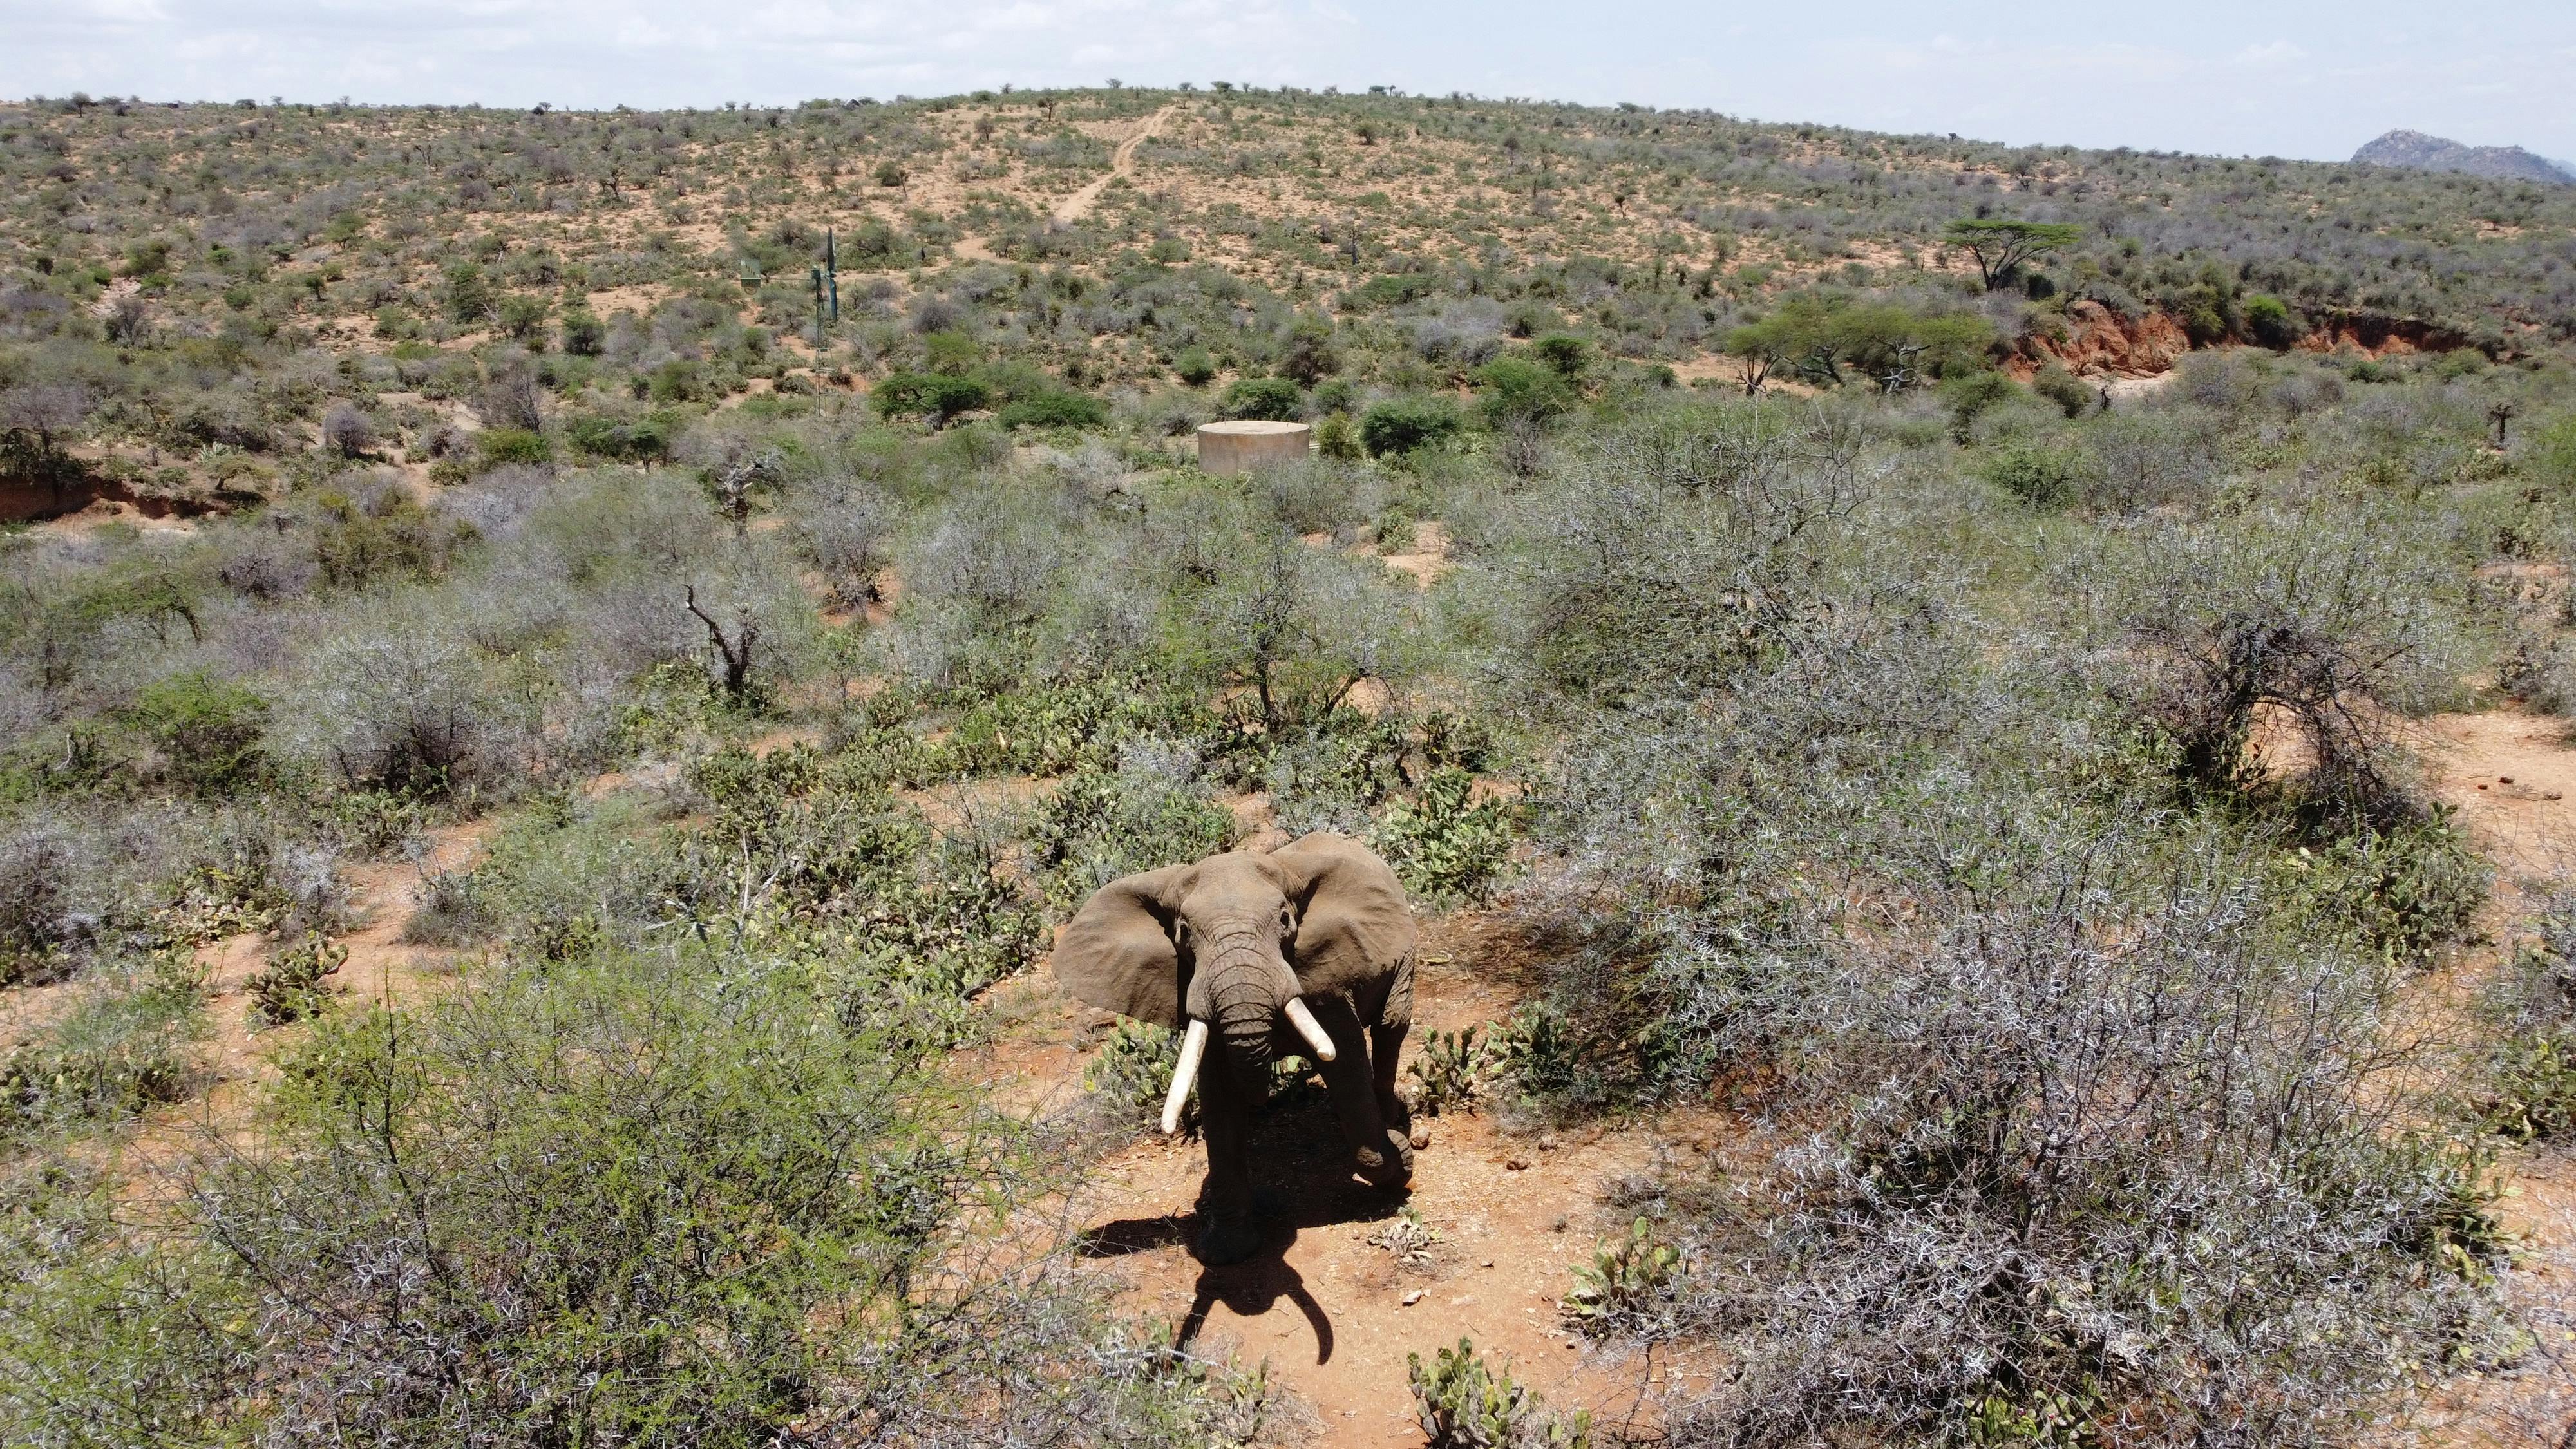 Gratis lagerfoto af afrikansk elefant, busk, dyrefotografering, dyreliv, elefant, elfenben, fugleperspektiv, kæmpe, kenya, natur, ører, pattedyr, planteæder, safari, træer, udendørs